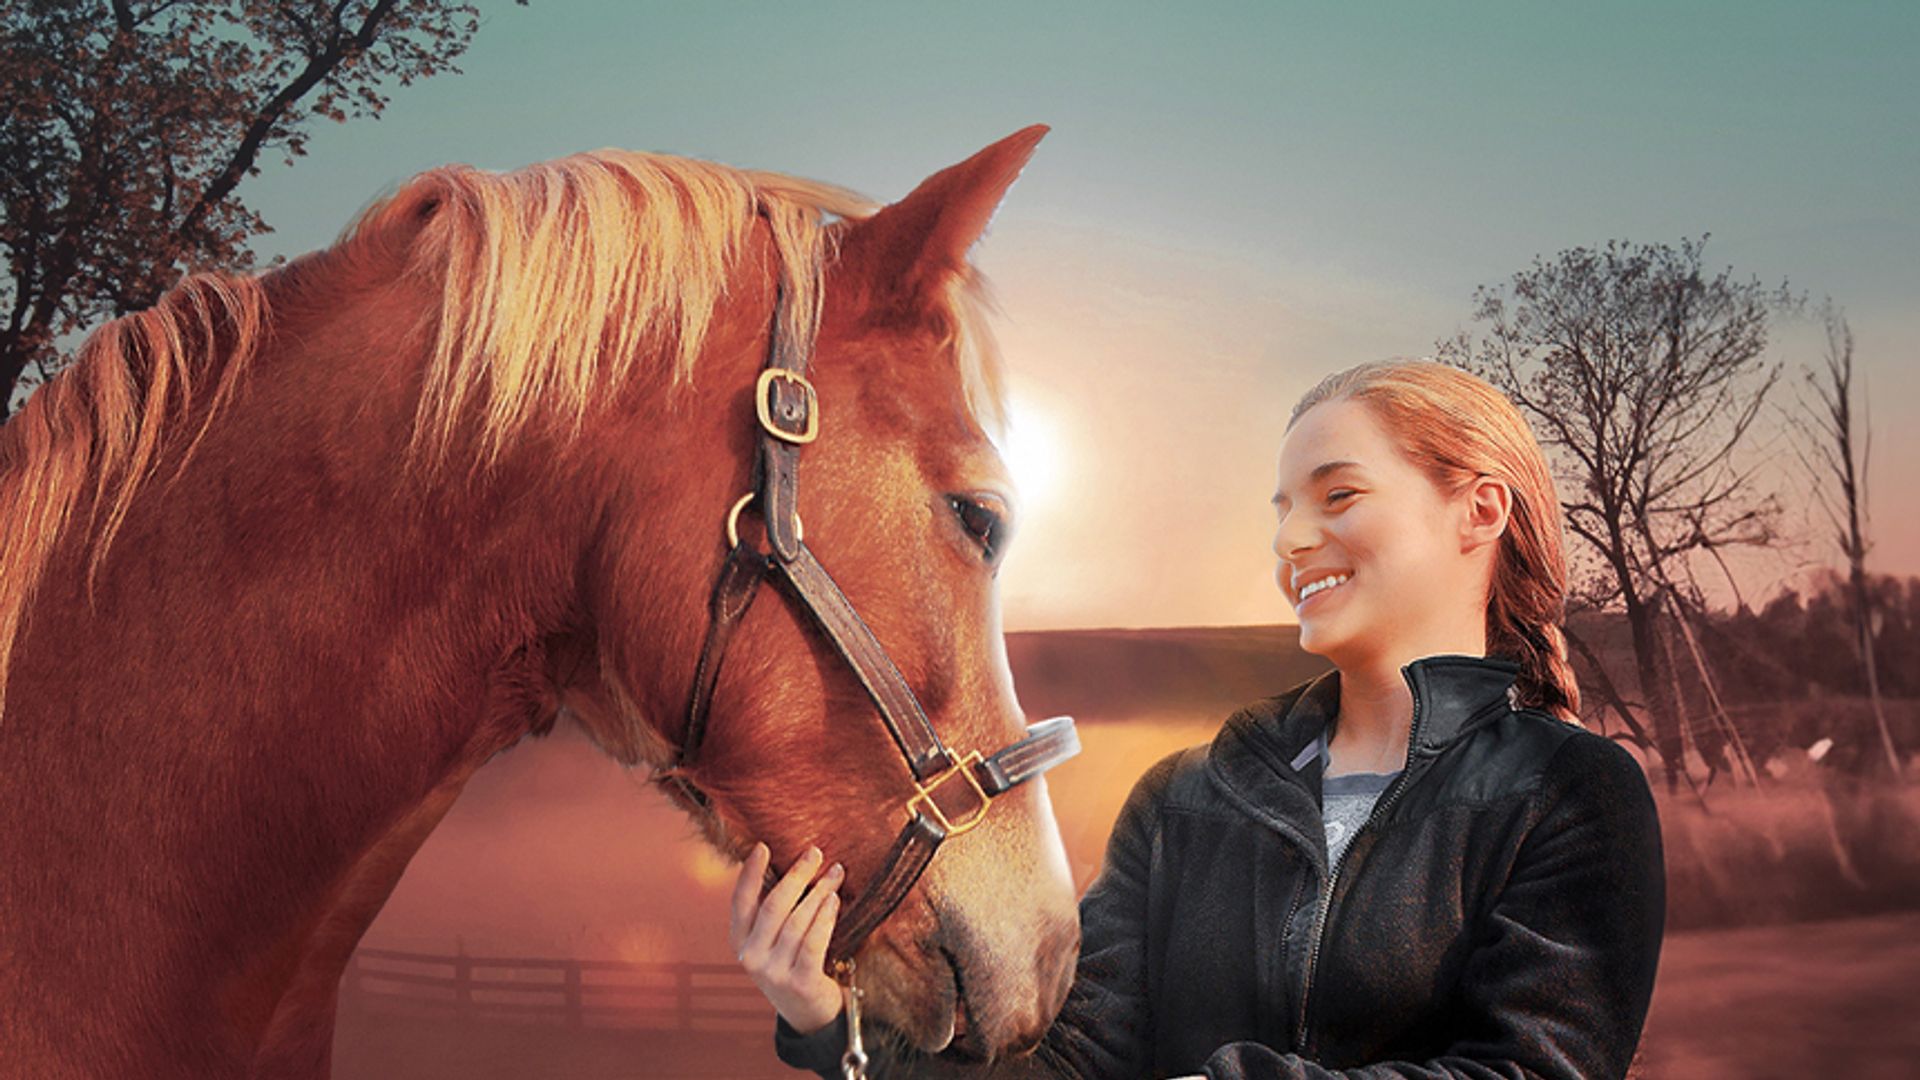 Ein Pferd für Lizzy - Mein Freund fürs Leben